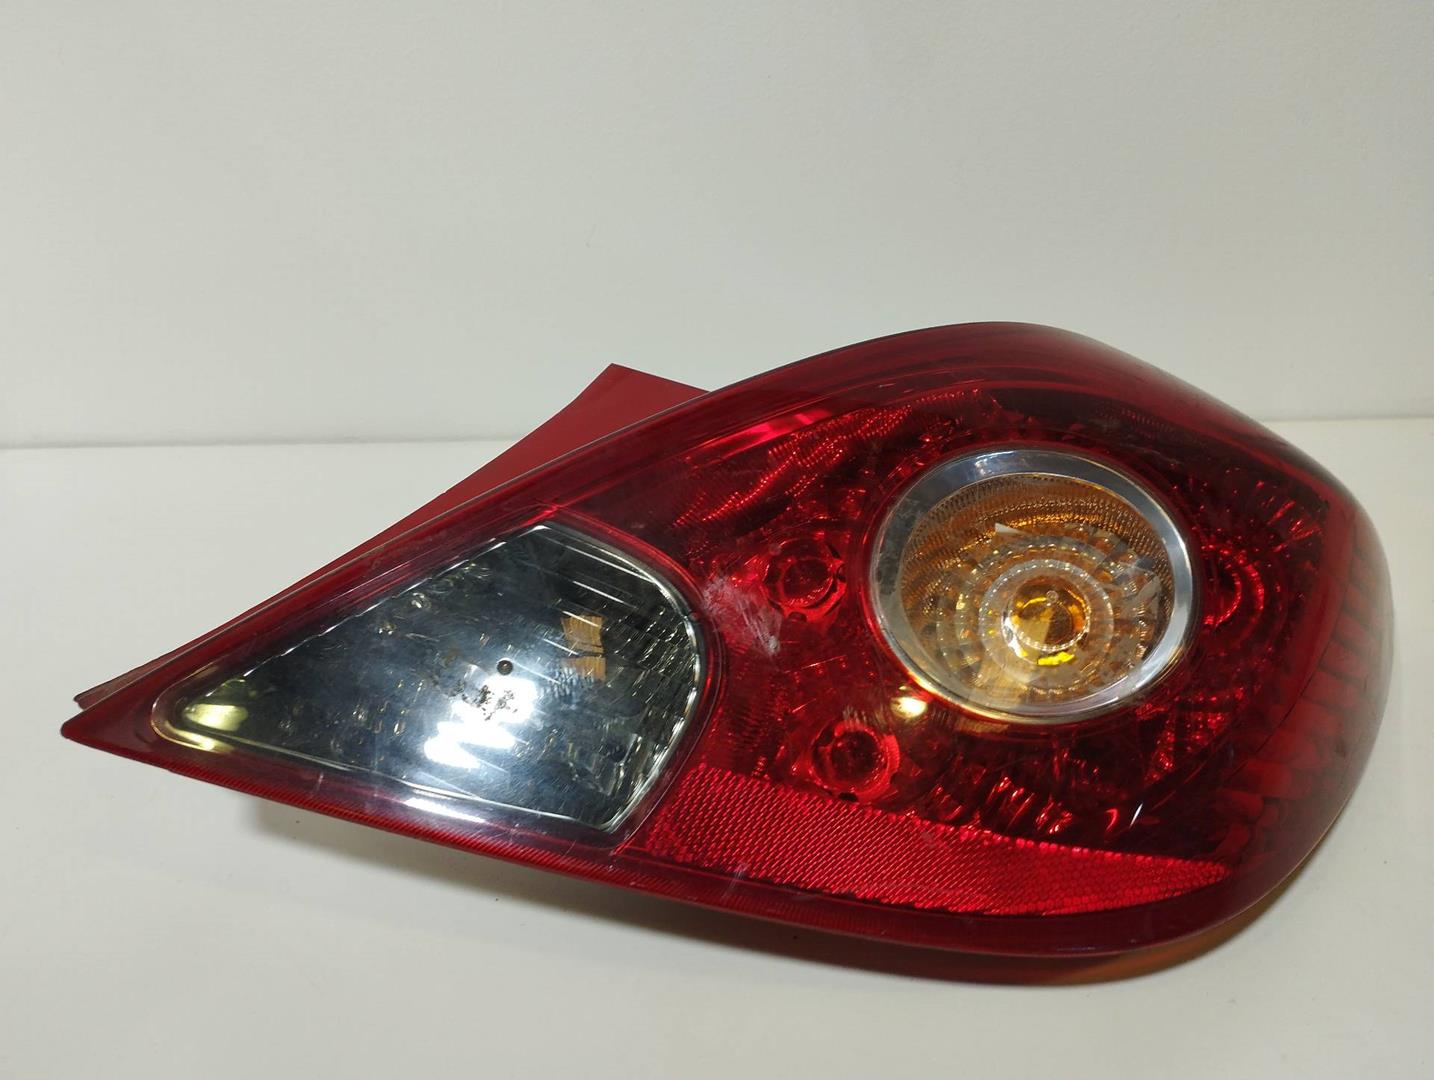 OPEL Corsa D (2006-2020) Rear Right Taillight Lamp 13186351, 89038961A, VALEO 24580076